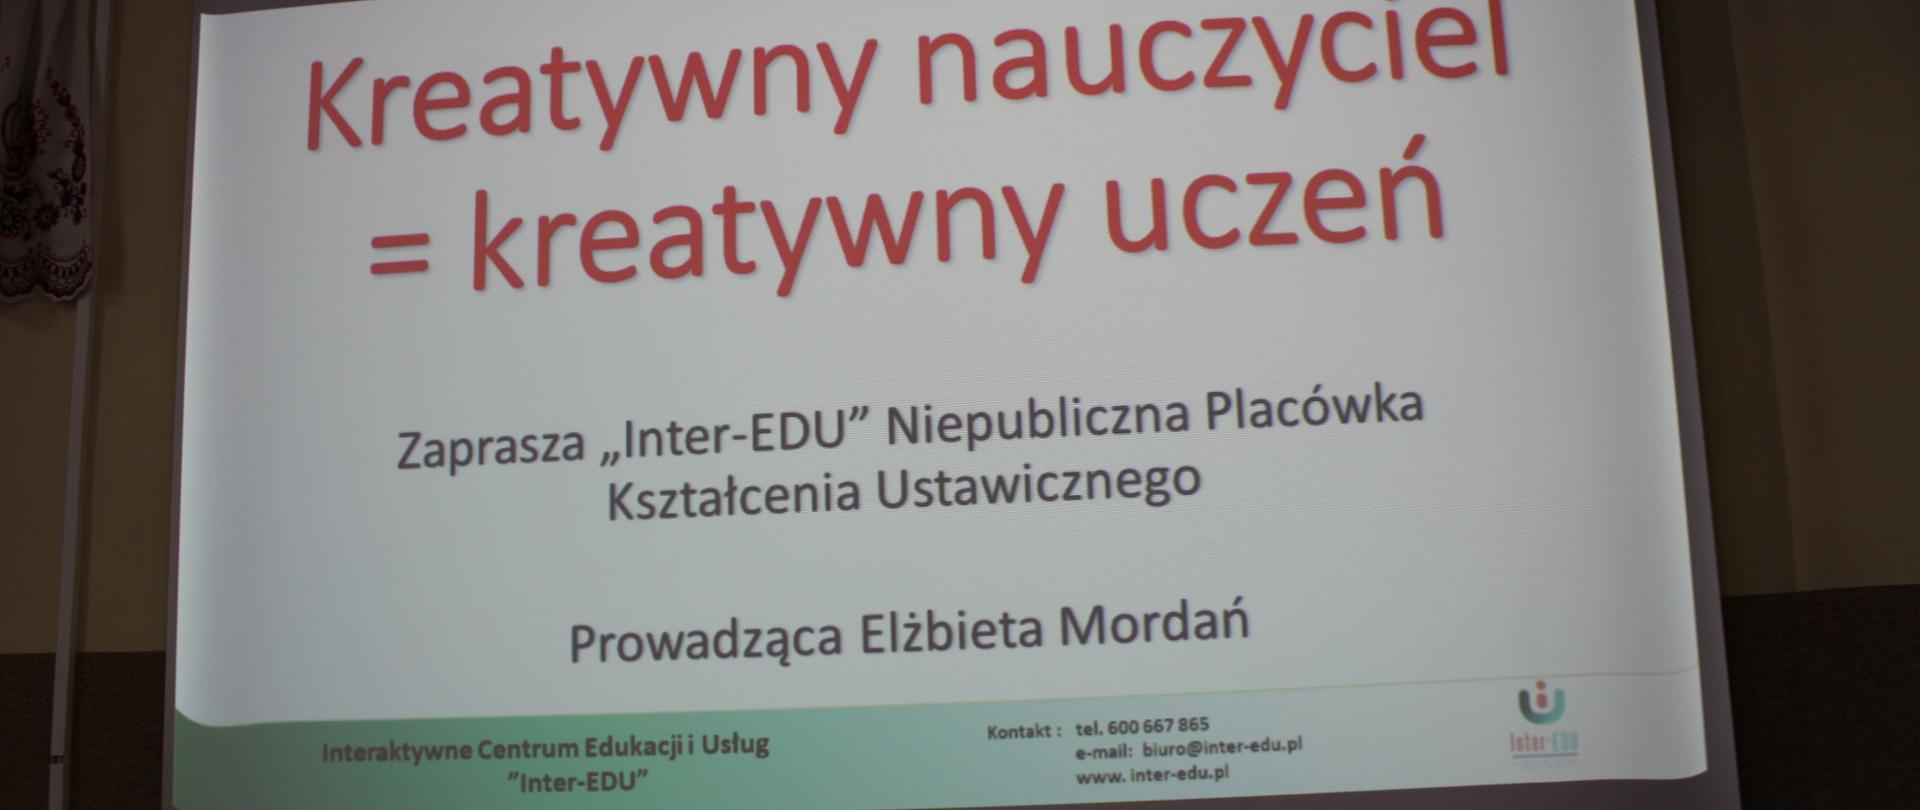 Rzut ekranu - wyświetlają się napisy "Kreatywny nauczyciel = kreatywny uczeń". Zaprasza "Inter - EDU" Niepubliczna Placówka Kształcenia Ustawicznego, prowadząca Elżbieta Mordań